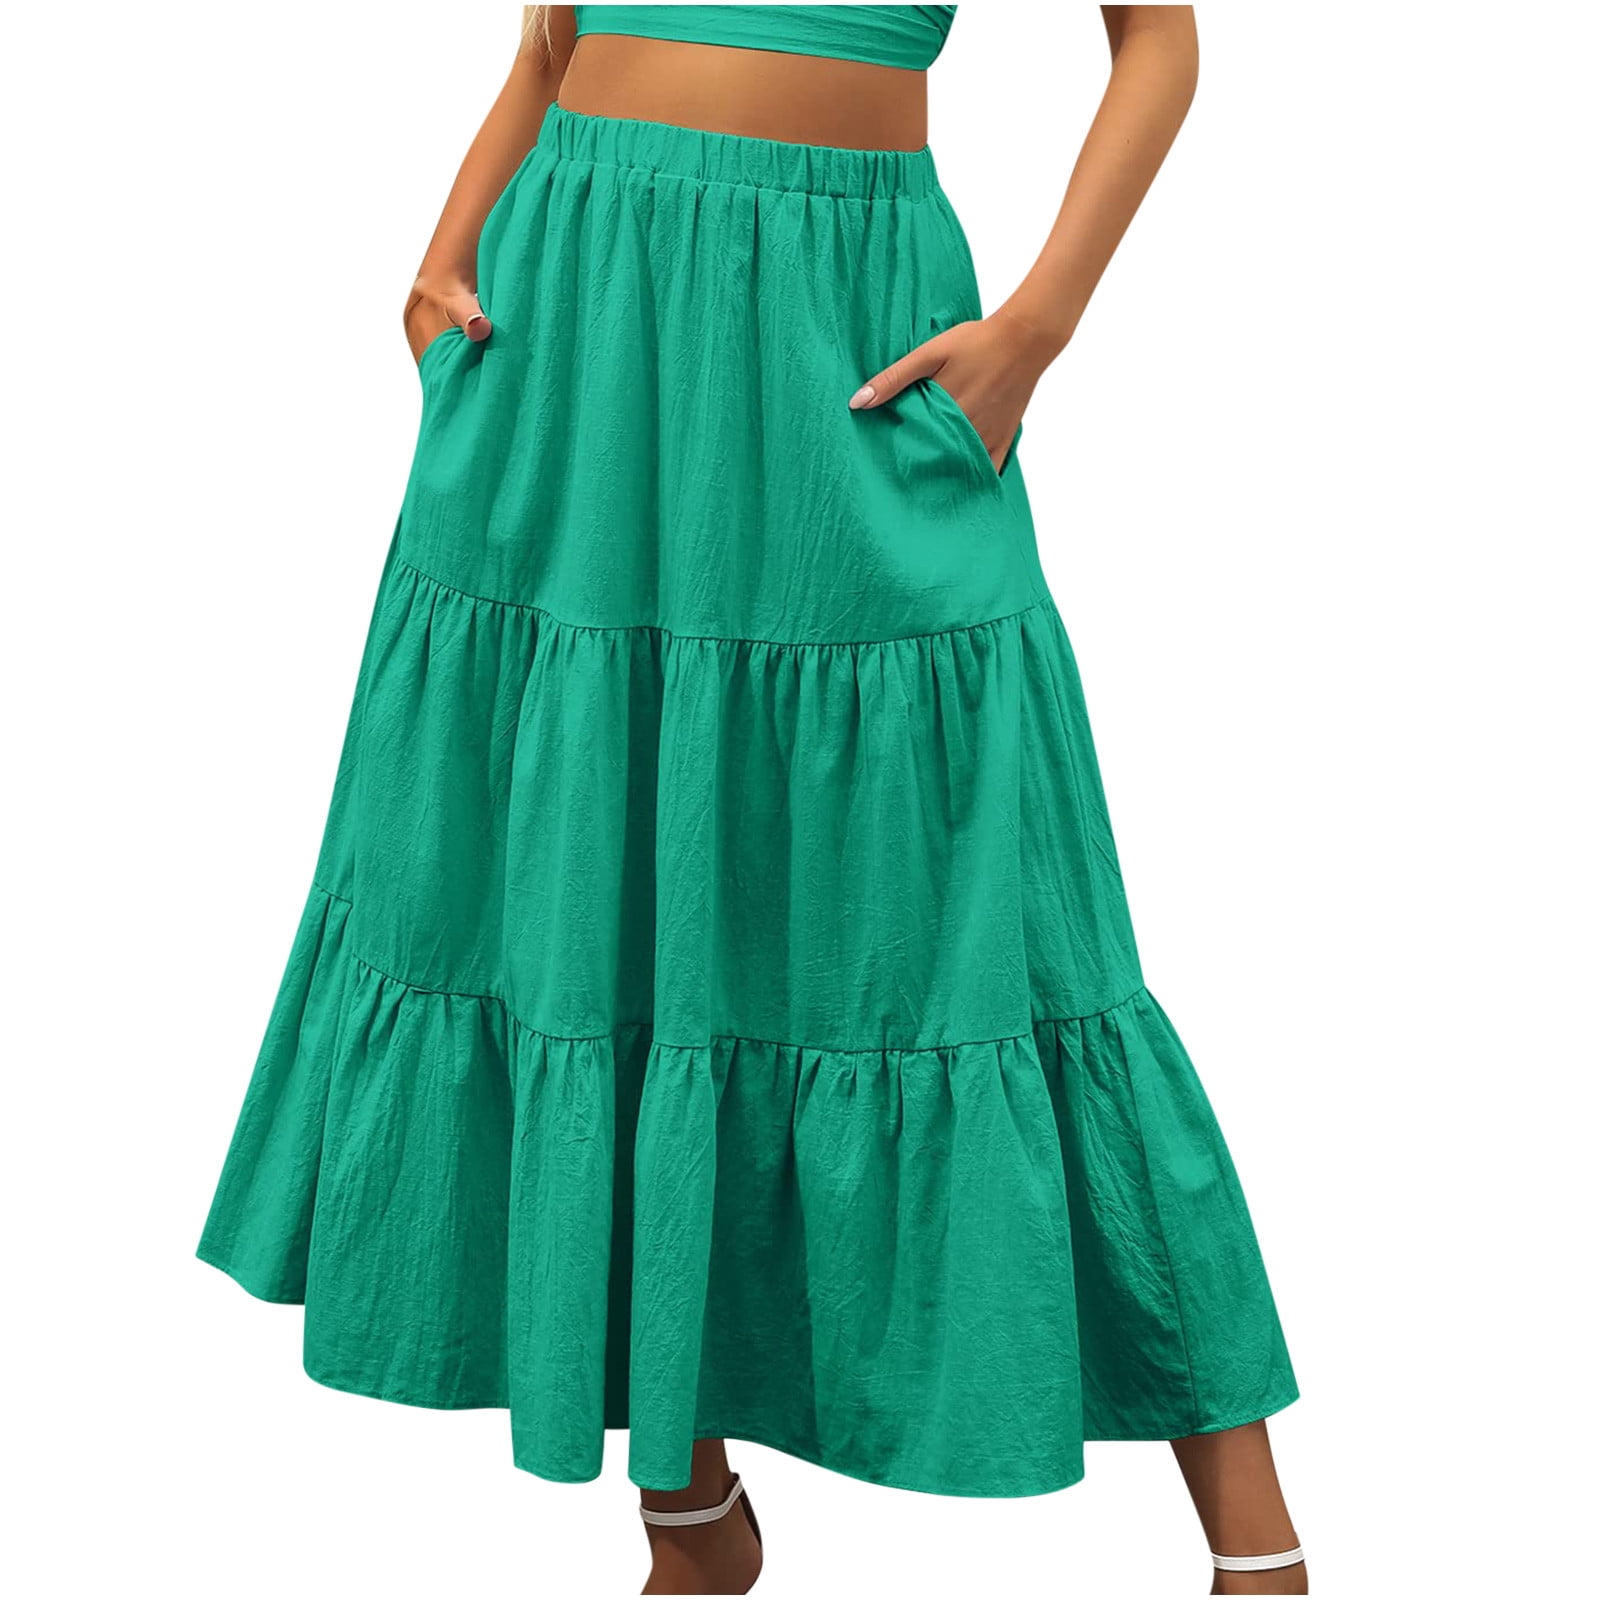 HTNBO Women's Boho A Line Flowy Skirts High Waist Swing Long Maxi Skirt ...